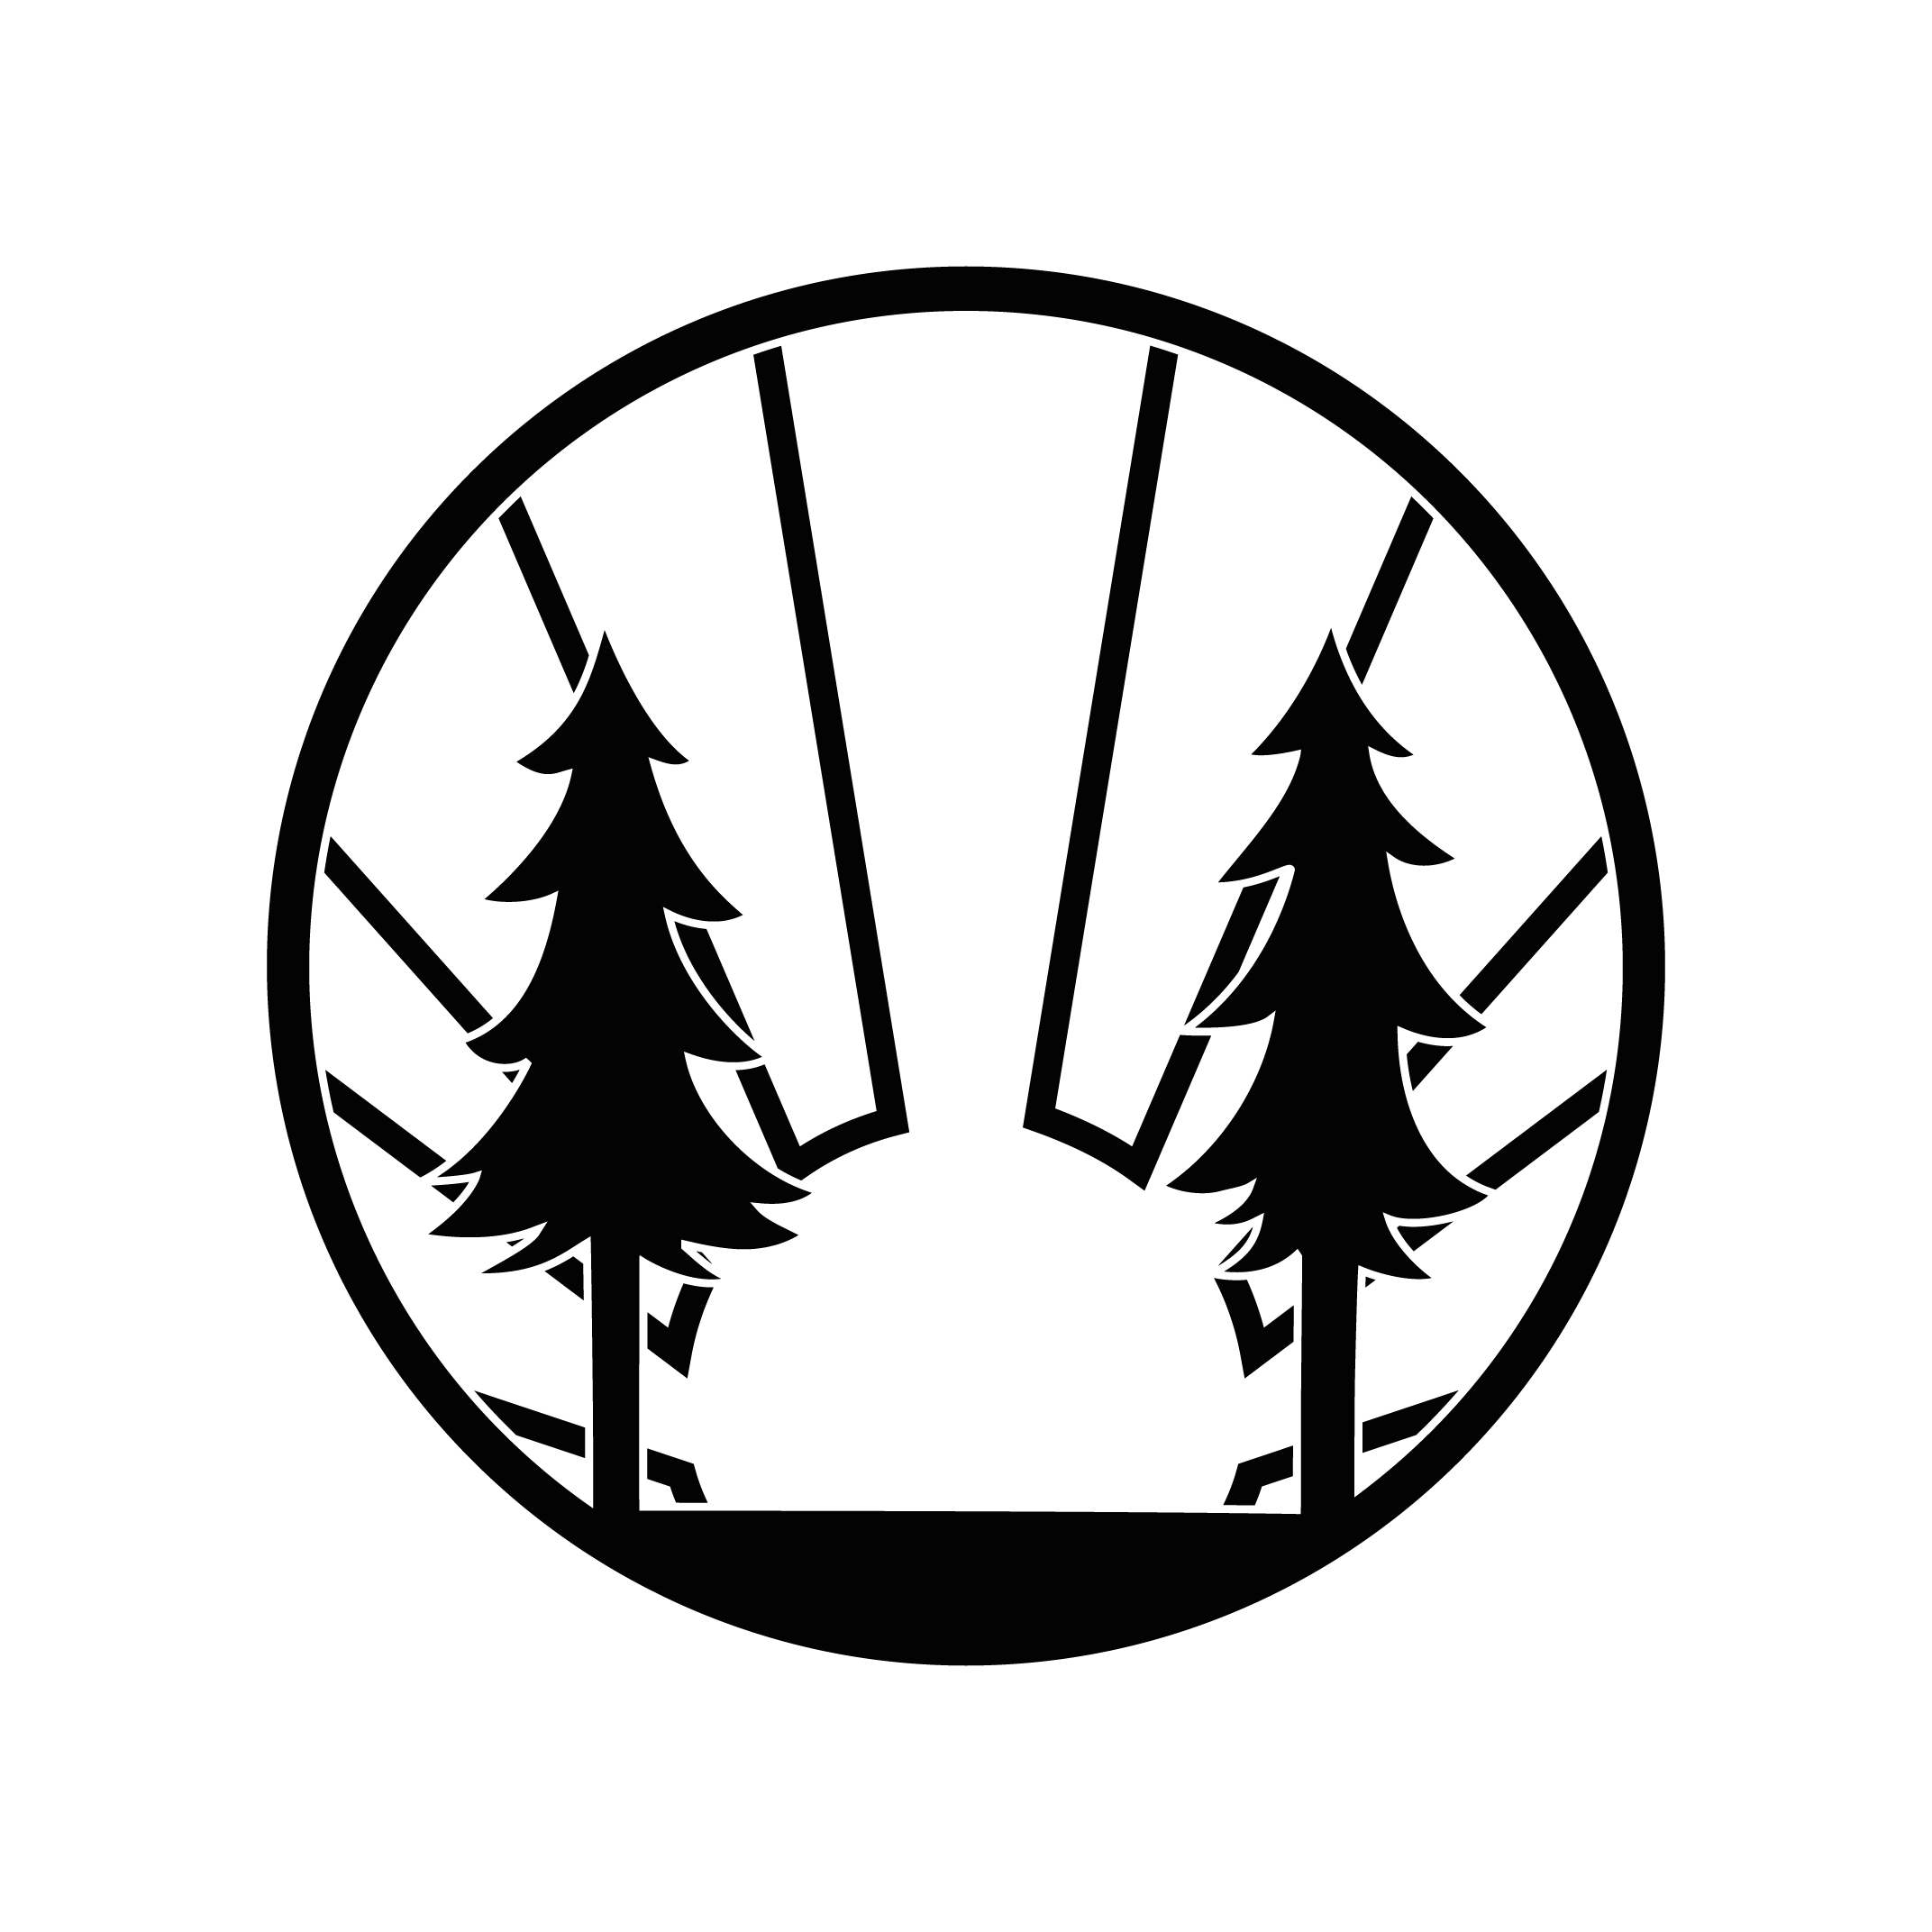 Folk Logo - Woodcraft Folk Logos